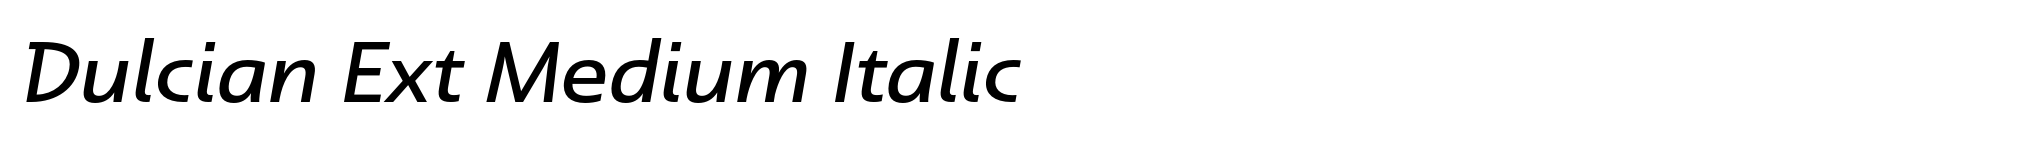 Dulcian Ext Medium Italic image